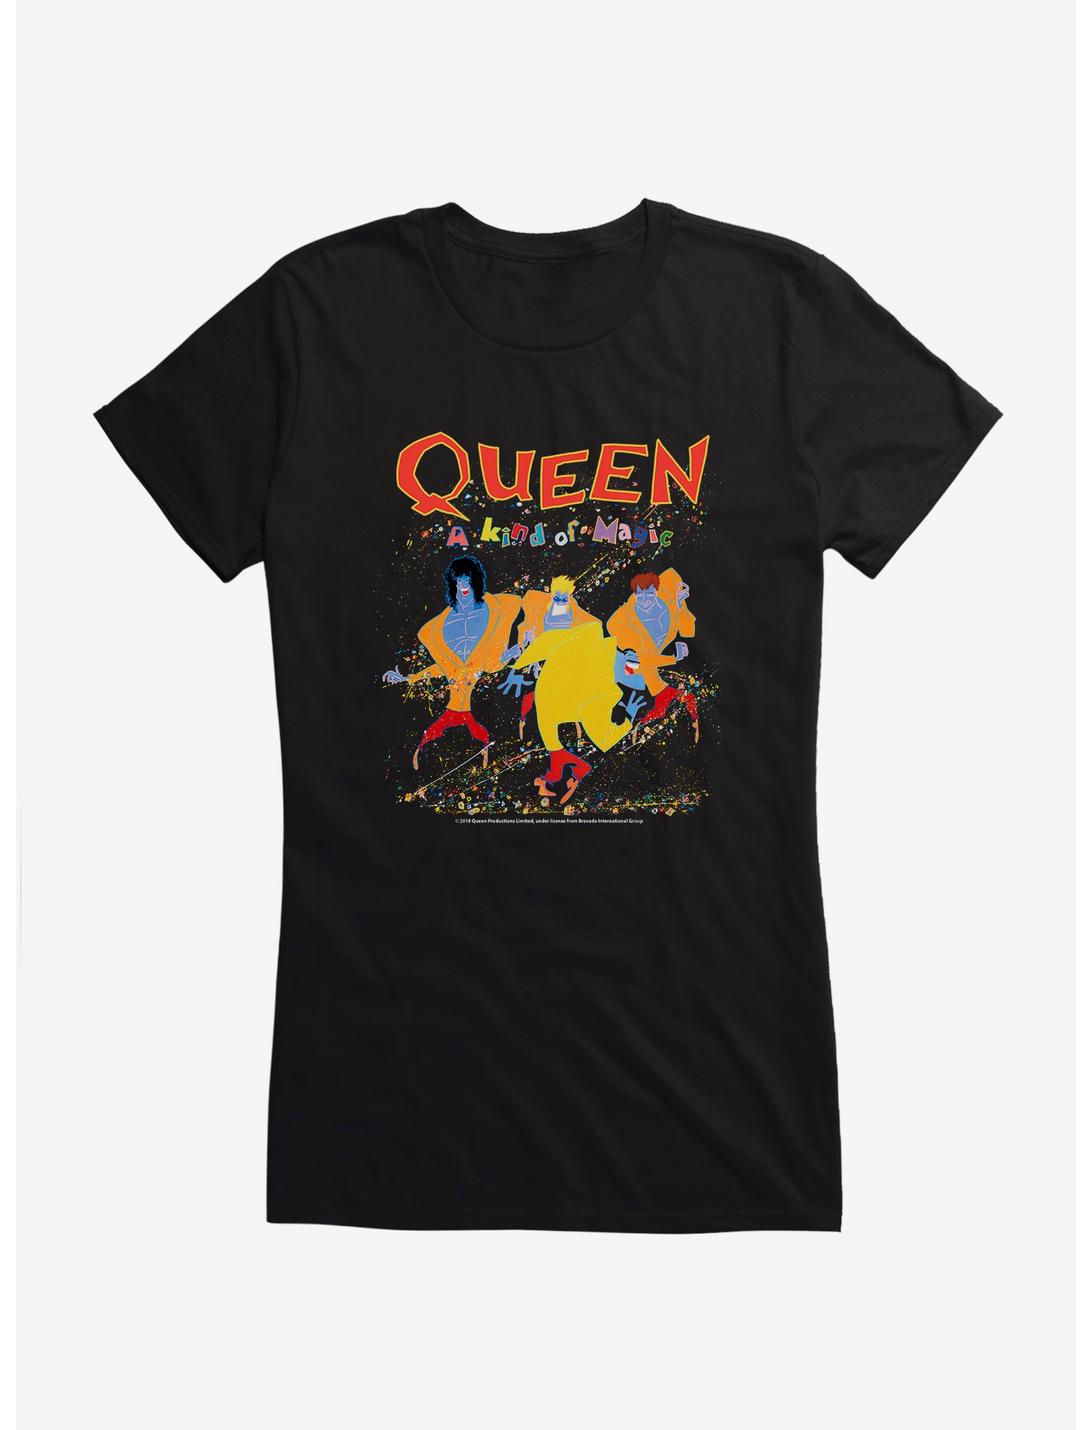 Queen A Kind of Magic Girls T-Shirt, BLACK, hi-res